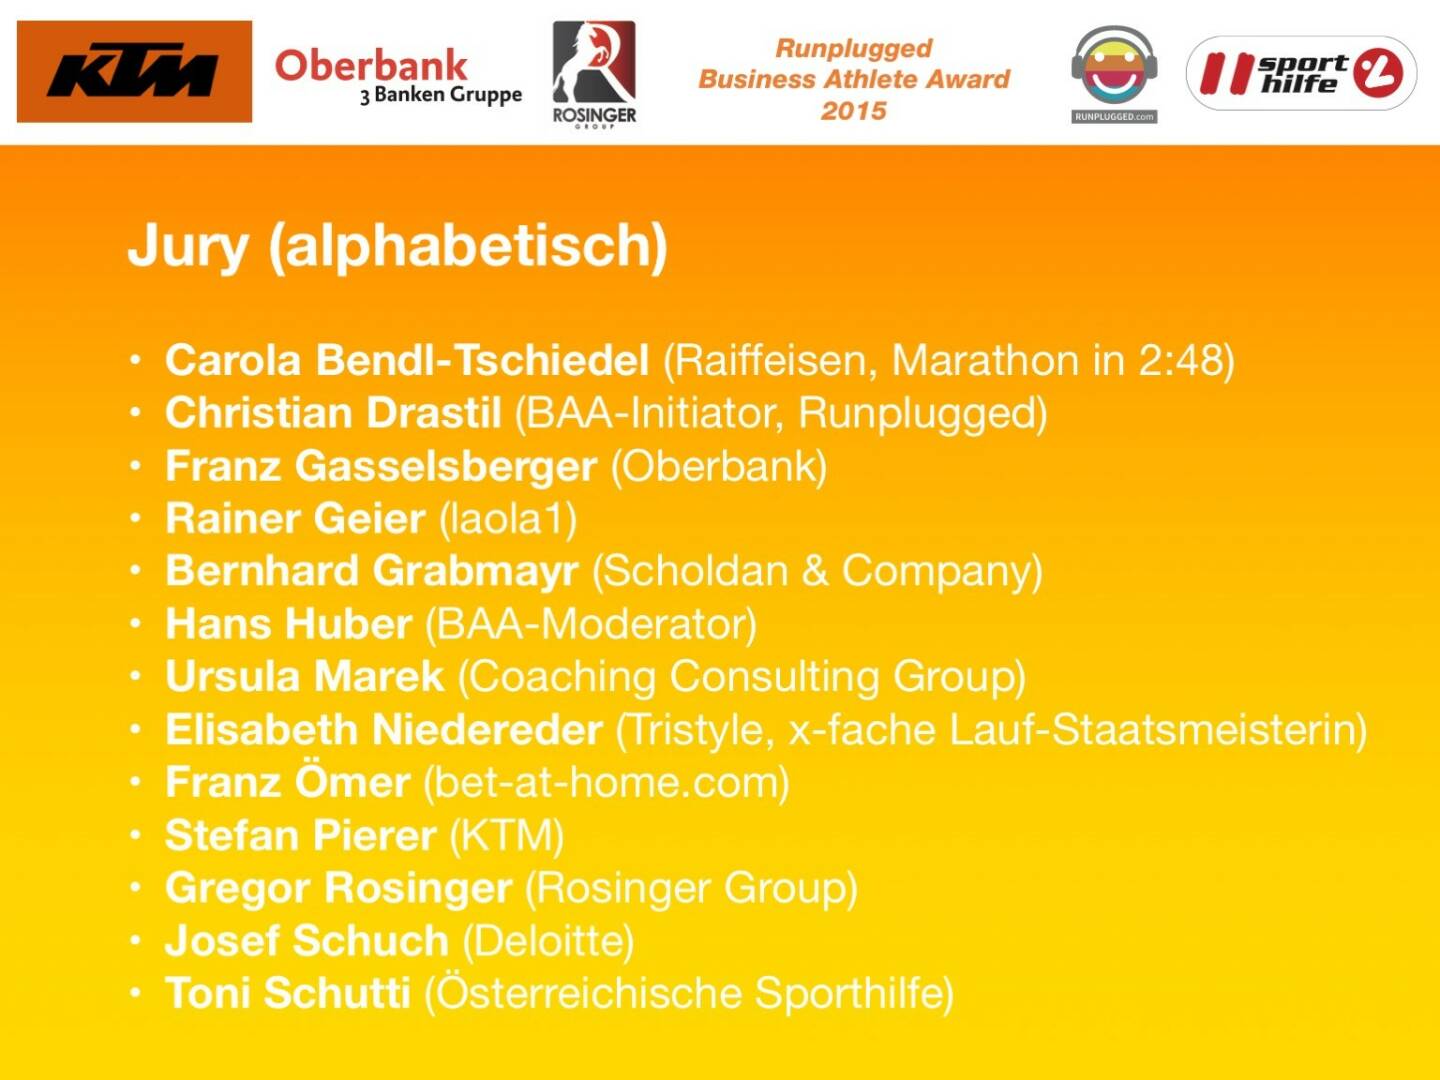 Jury (alphabetisch): Carola Bendl-Tschiedel (Raiffeisen, Marathon in 2:48), Christian Drastil (BAA-Initiator, Runplugged), Franz Gasselsberger (Oberbank), Rainer Geier (laola1), Bernhard Grabmayr (Scholdan & Company), Hans Huber (BAA-Moderator), Ursula Marek (Coaching Consulting Group), Elisabeth Niedereder (Tristyle, x-fache Lauf-Staatsmeisterin), Franz Ömer (bet-at-home.com), Stefan Pierer (KTM), Gregor Rosinger (Rosinger Group), Josef Schuch (Deloitte), Toni Schutti (Österreichische Sporthilfe)